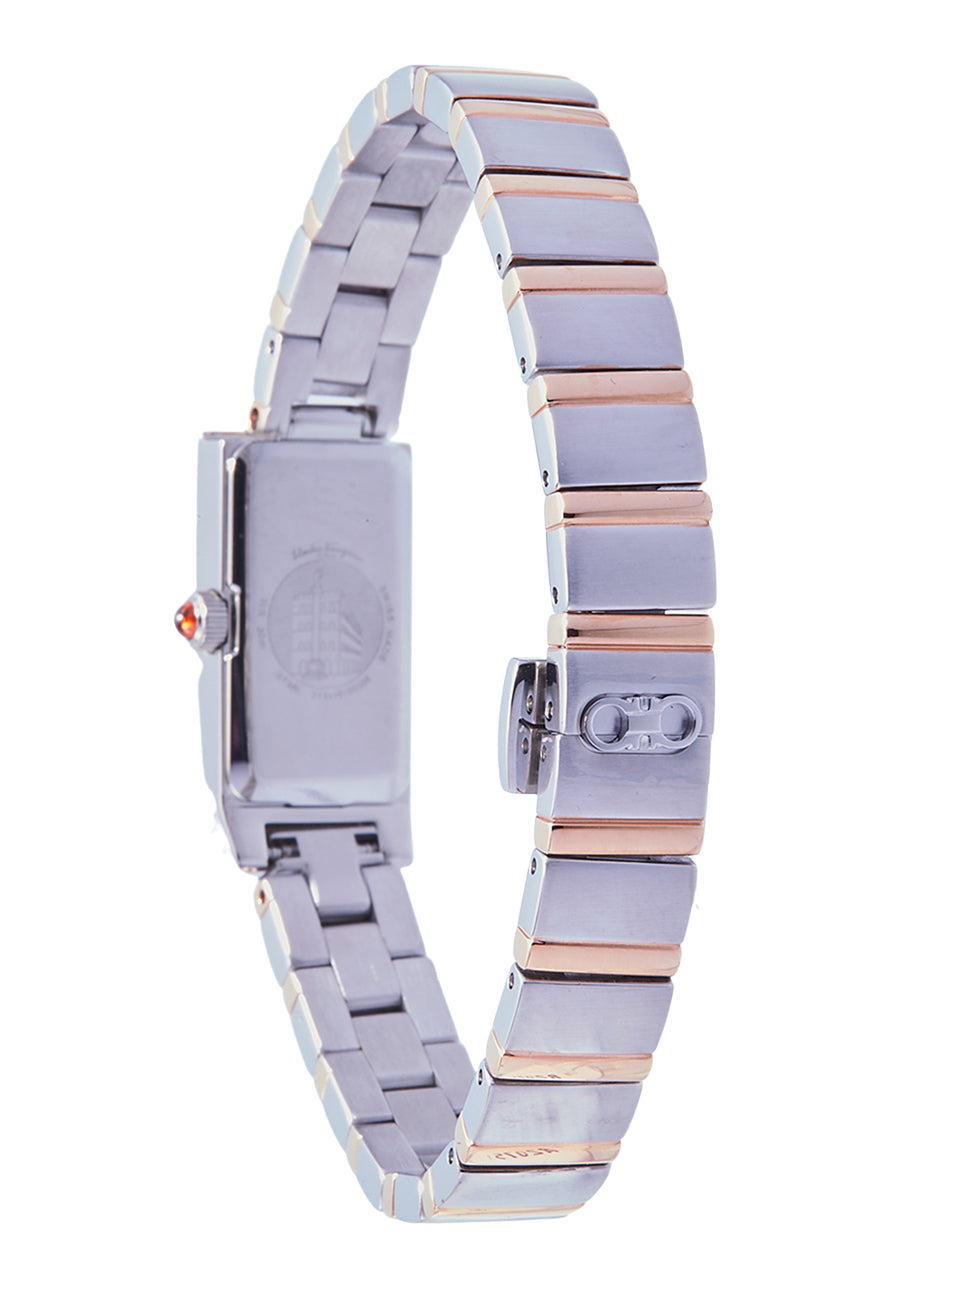 Ferragamo Women's Essential Watch White/Iprg 14x33mm SFMK00422